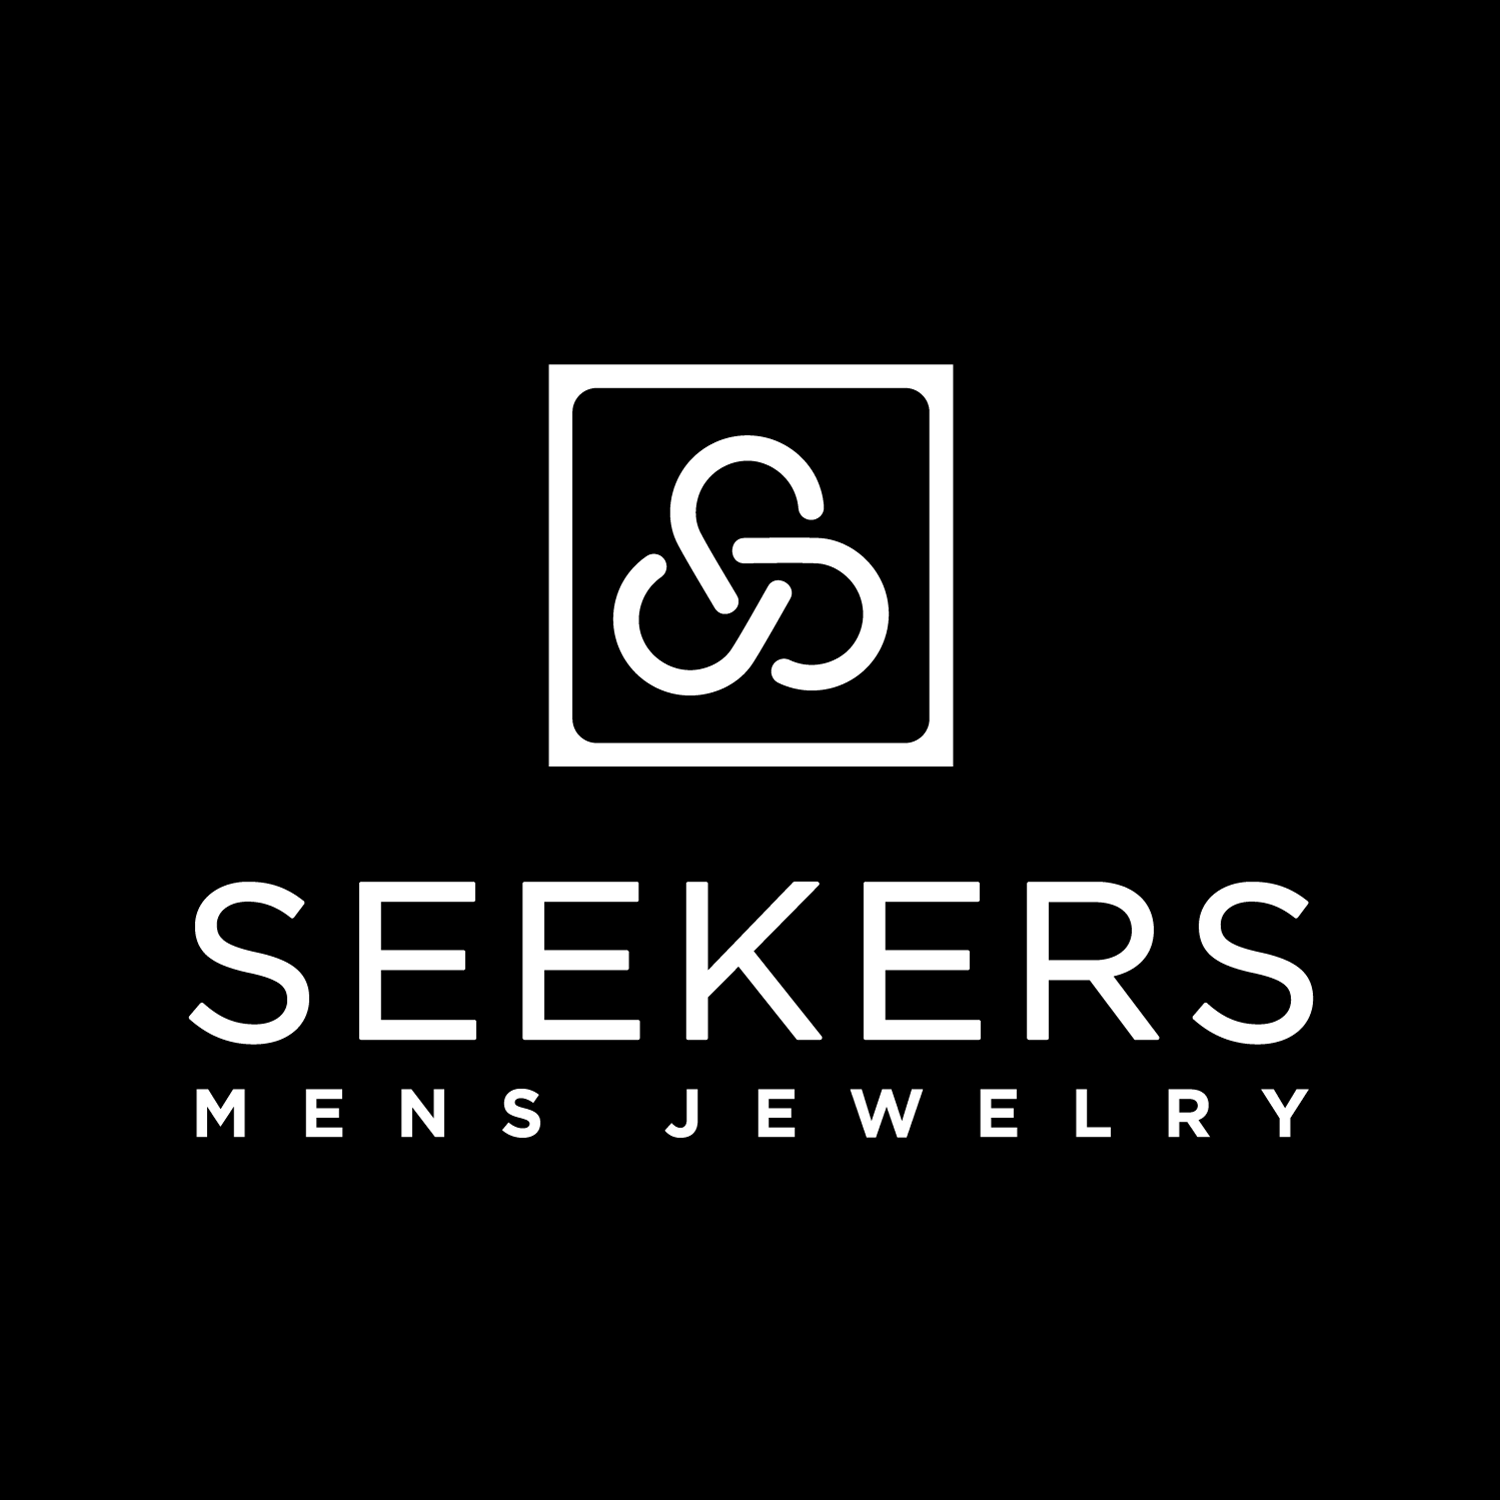 Seekers Jewelry